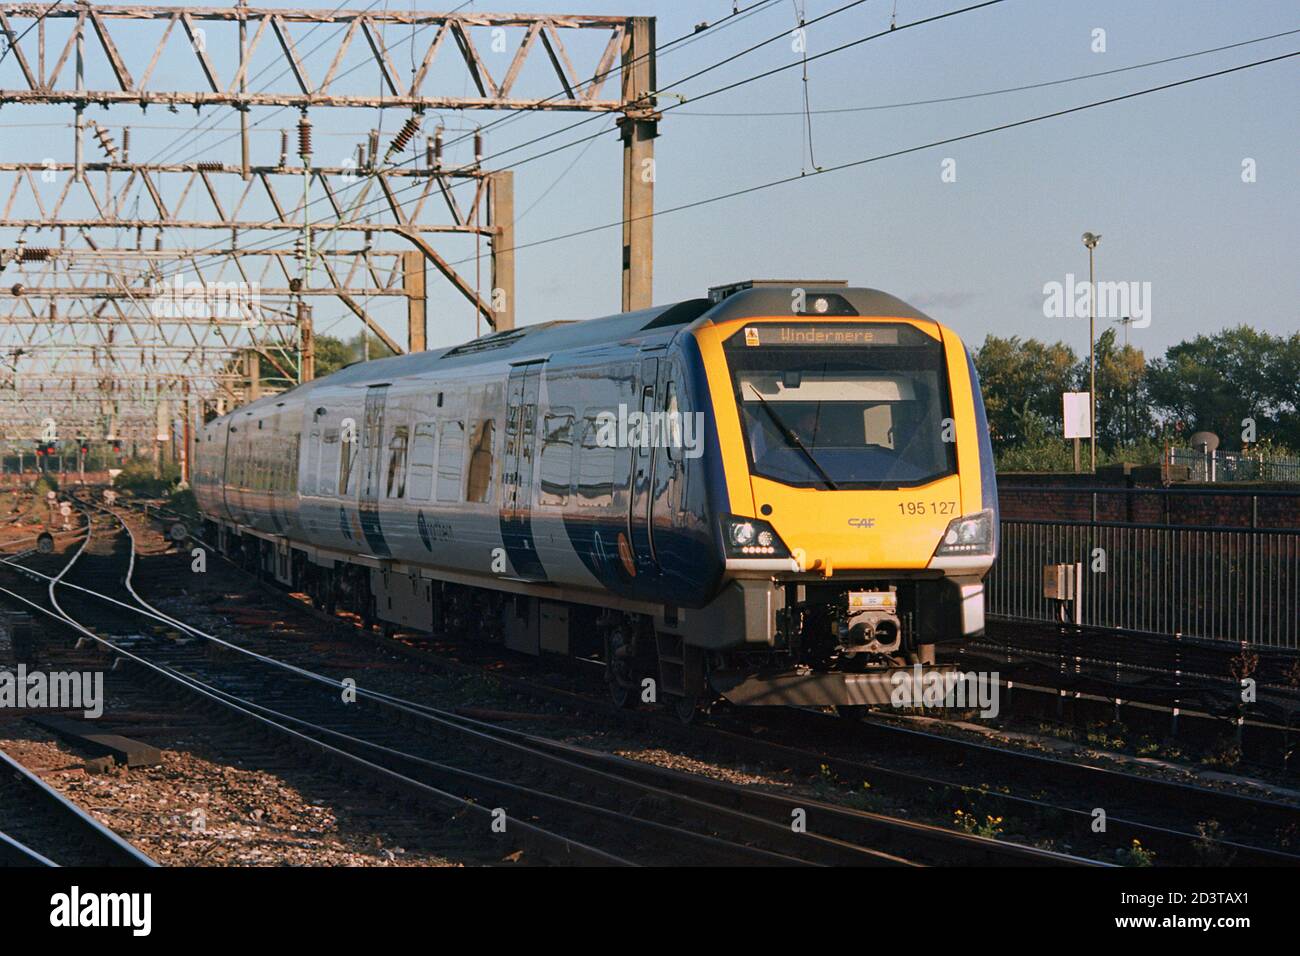 Manchester, Großbritannien - 19. September 2020: Ein Nordzug (Klasse 195) am Bahnhof Manchester Piccadilly für den Nahverkehr. Stockfoto